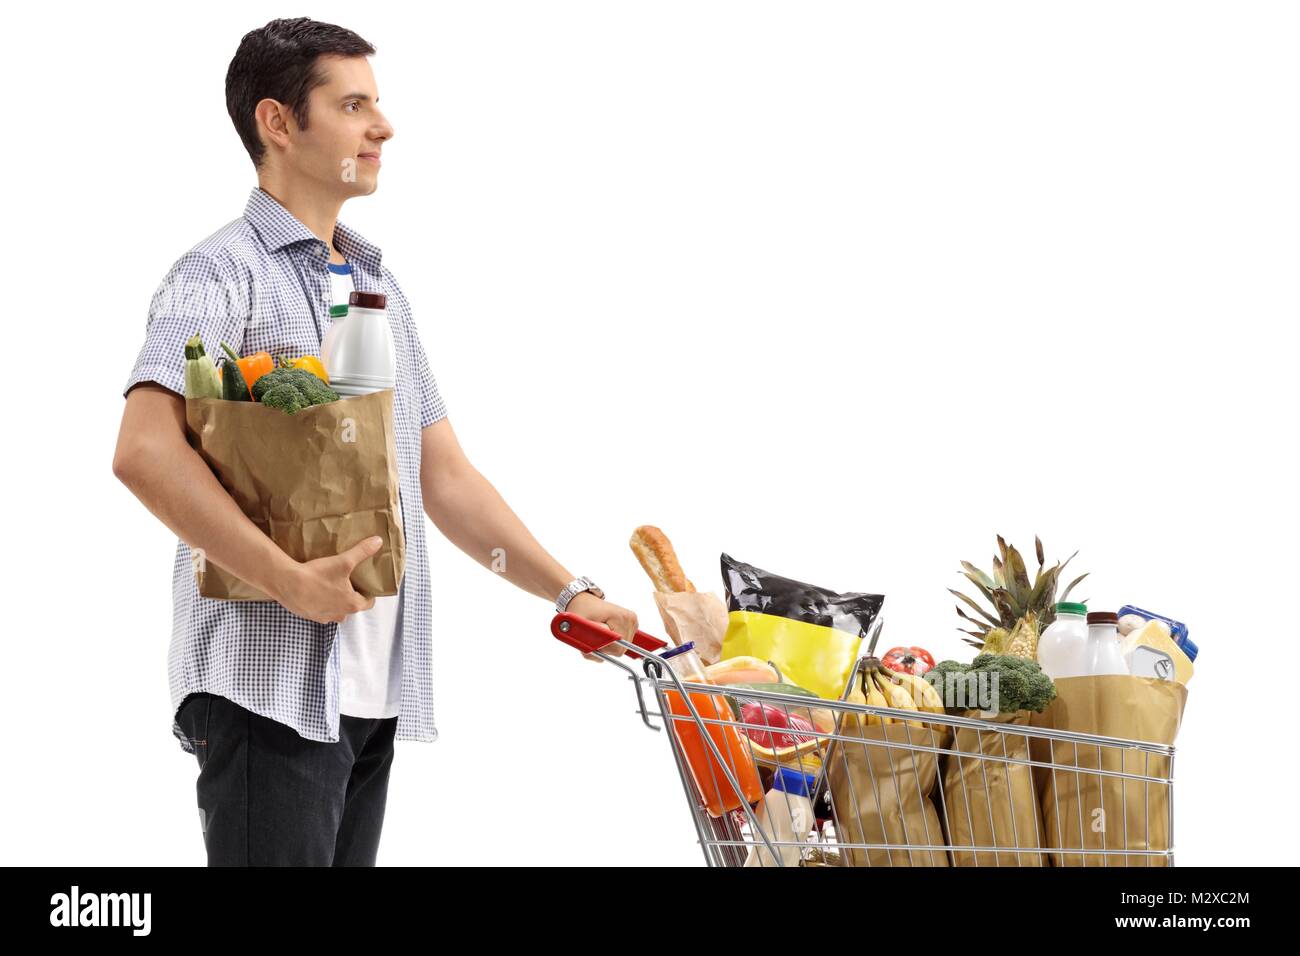 Junger Mann mit einer Einkaufstasche und einen Warenkorb mit Lebensmitteln auf weißem Hintergrund gefüllt Stockfoto